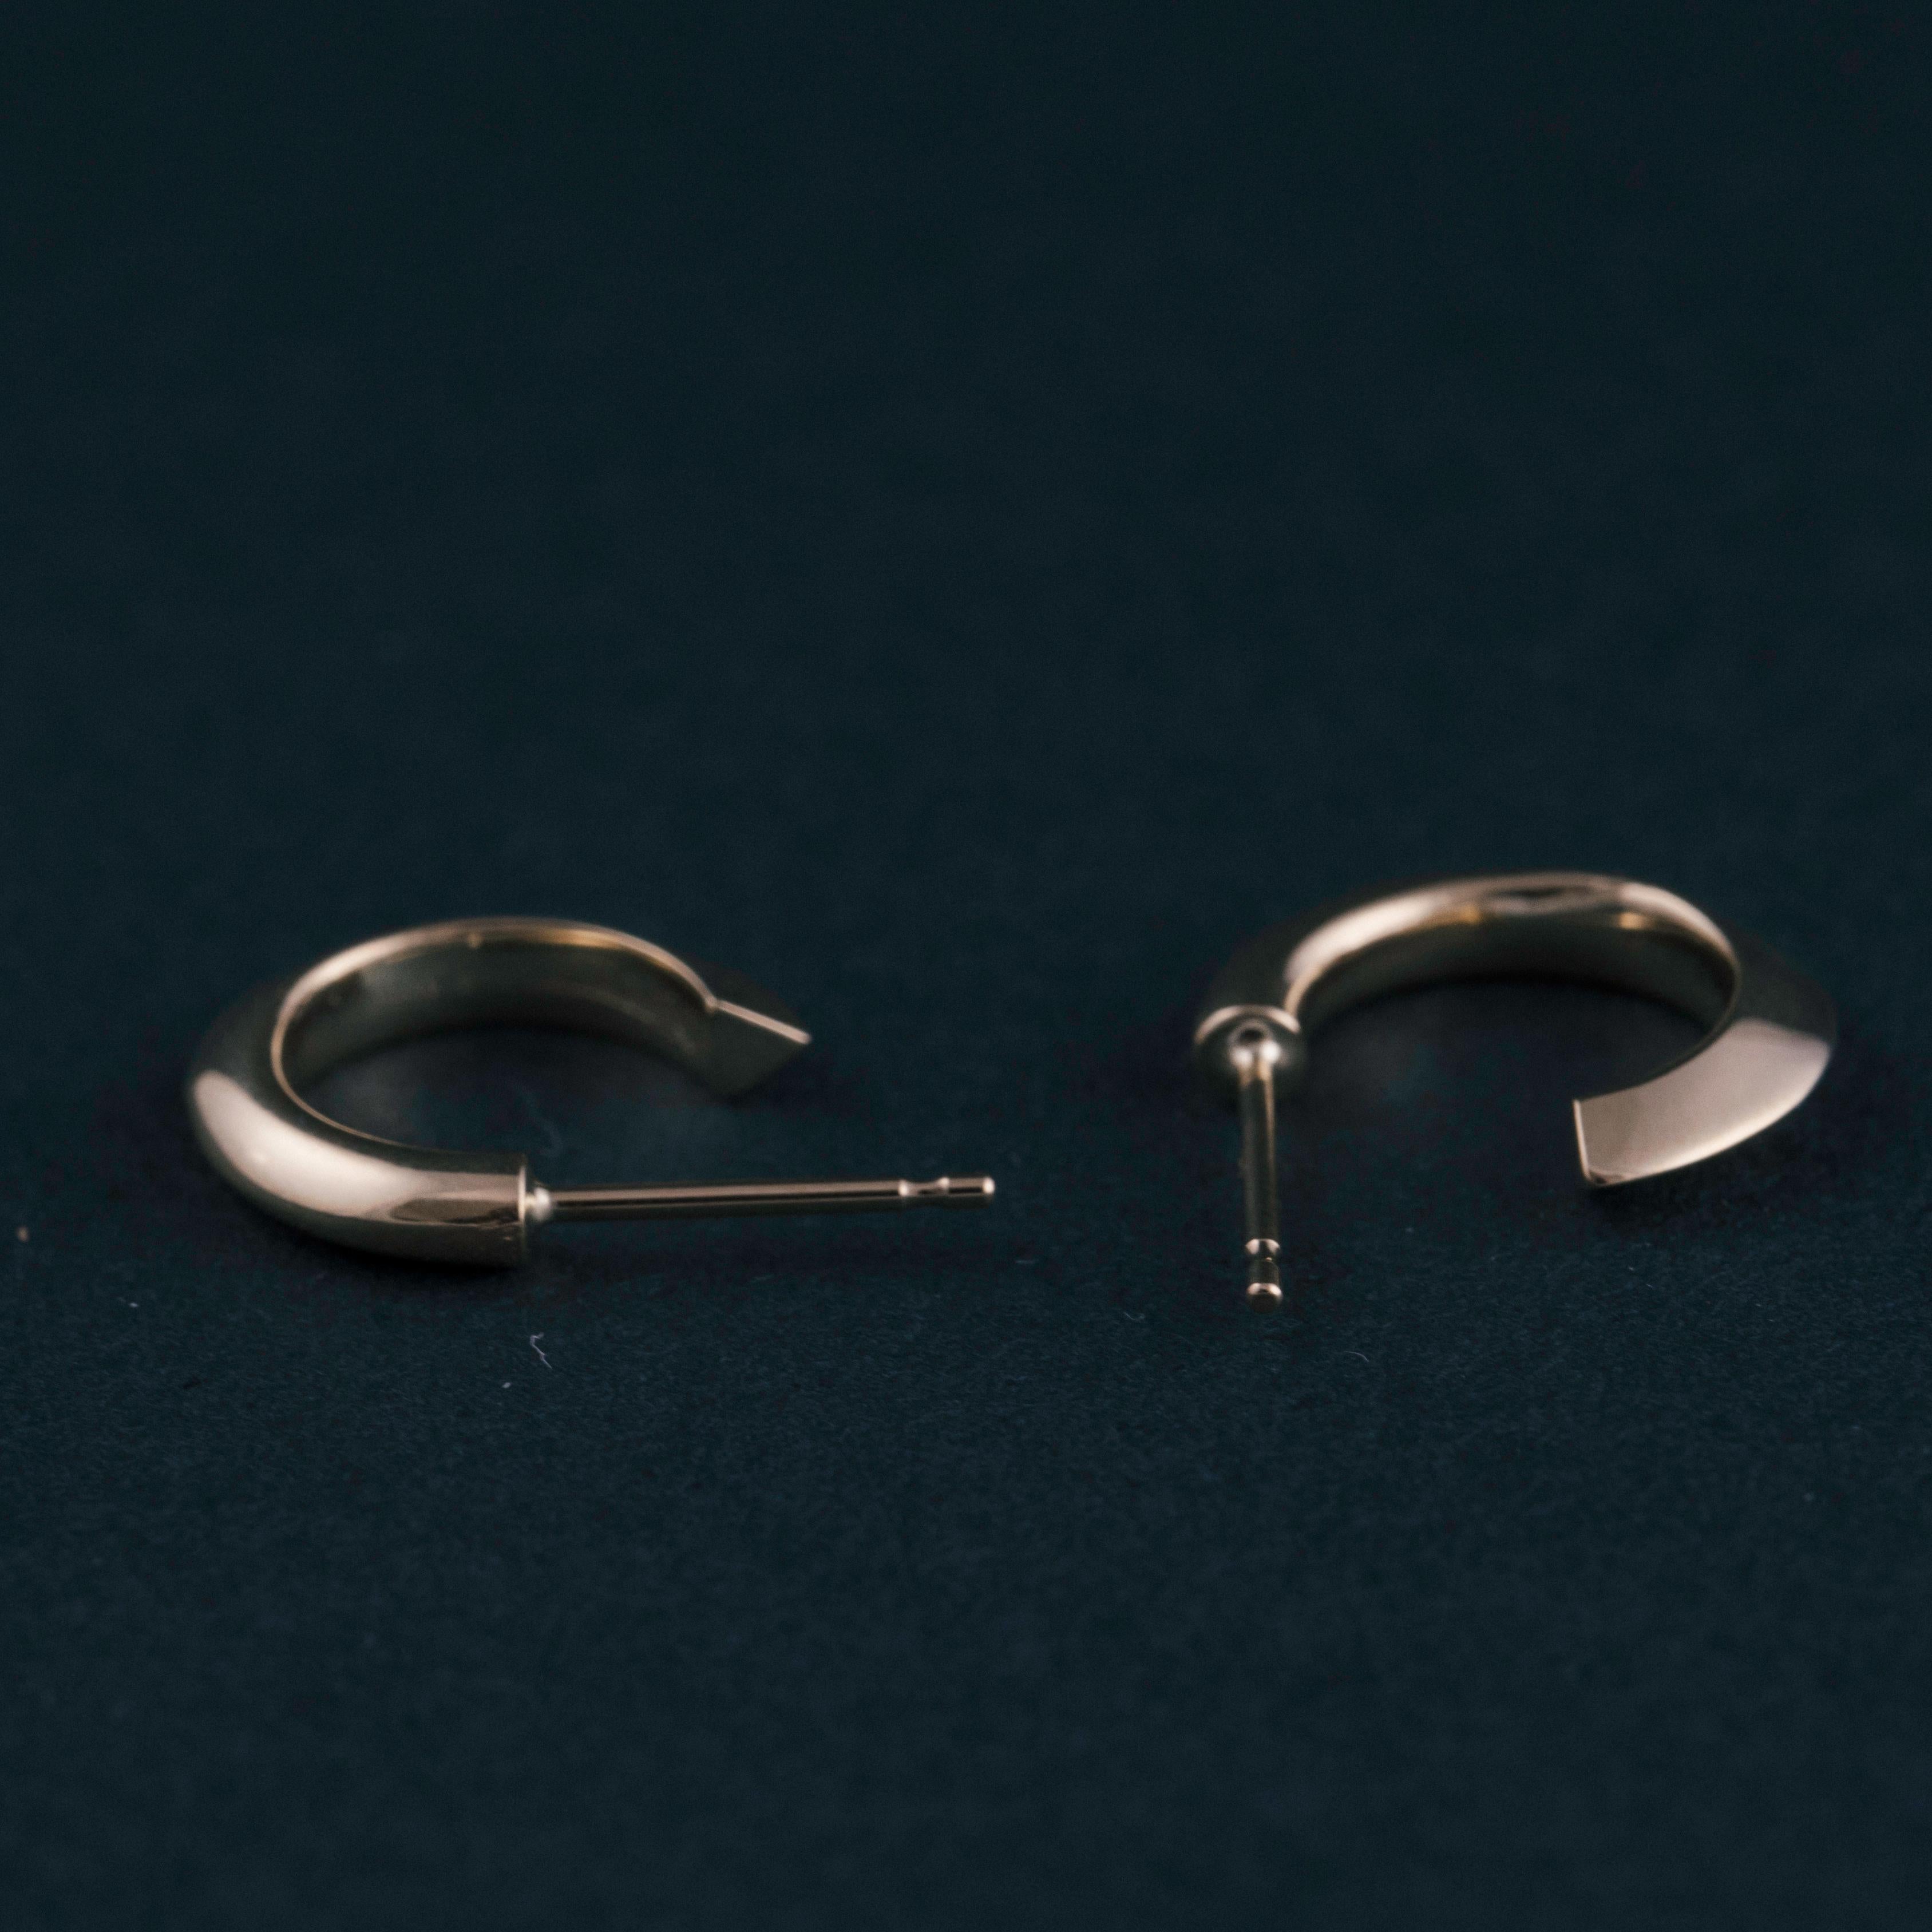 Die Small Flow Hoop-Ohrringe beginnen als Kreis und gehen fließend in ein Dreieck über. Diese Ohrringe sind ein bequemes, alltägliches Statement für jede Gelegenheit und eine zeitlose Neuinterpretation eines Klassikers. Der aus massivem 14-karätigem